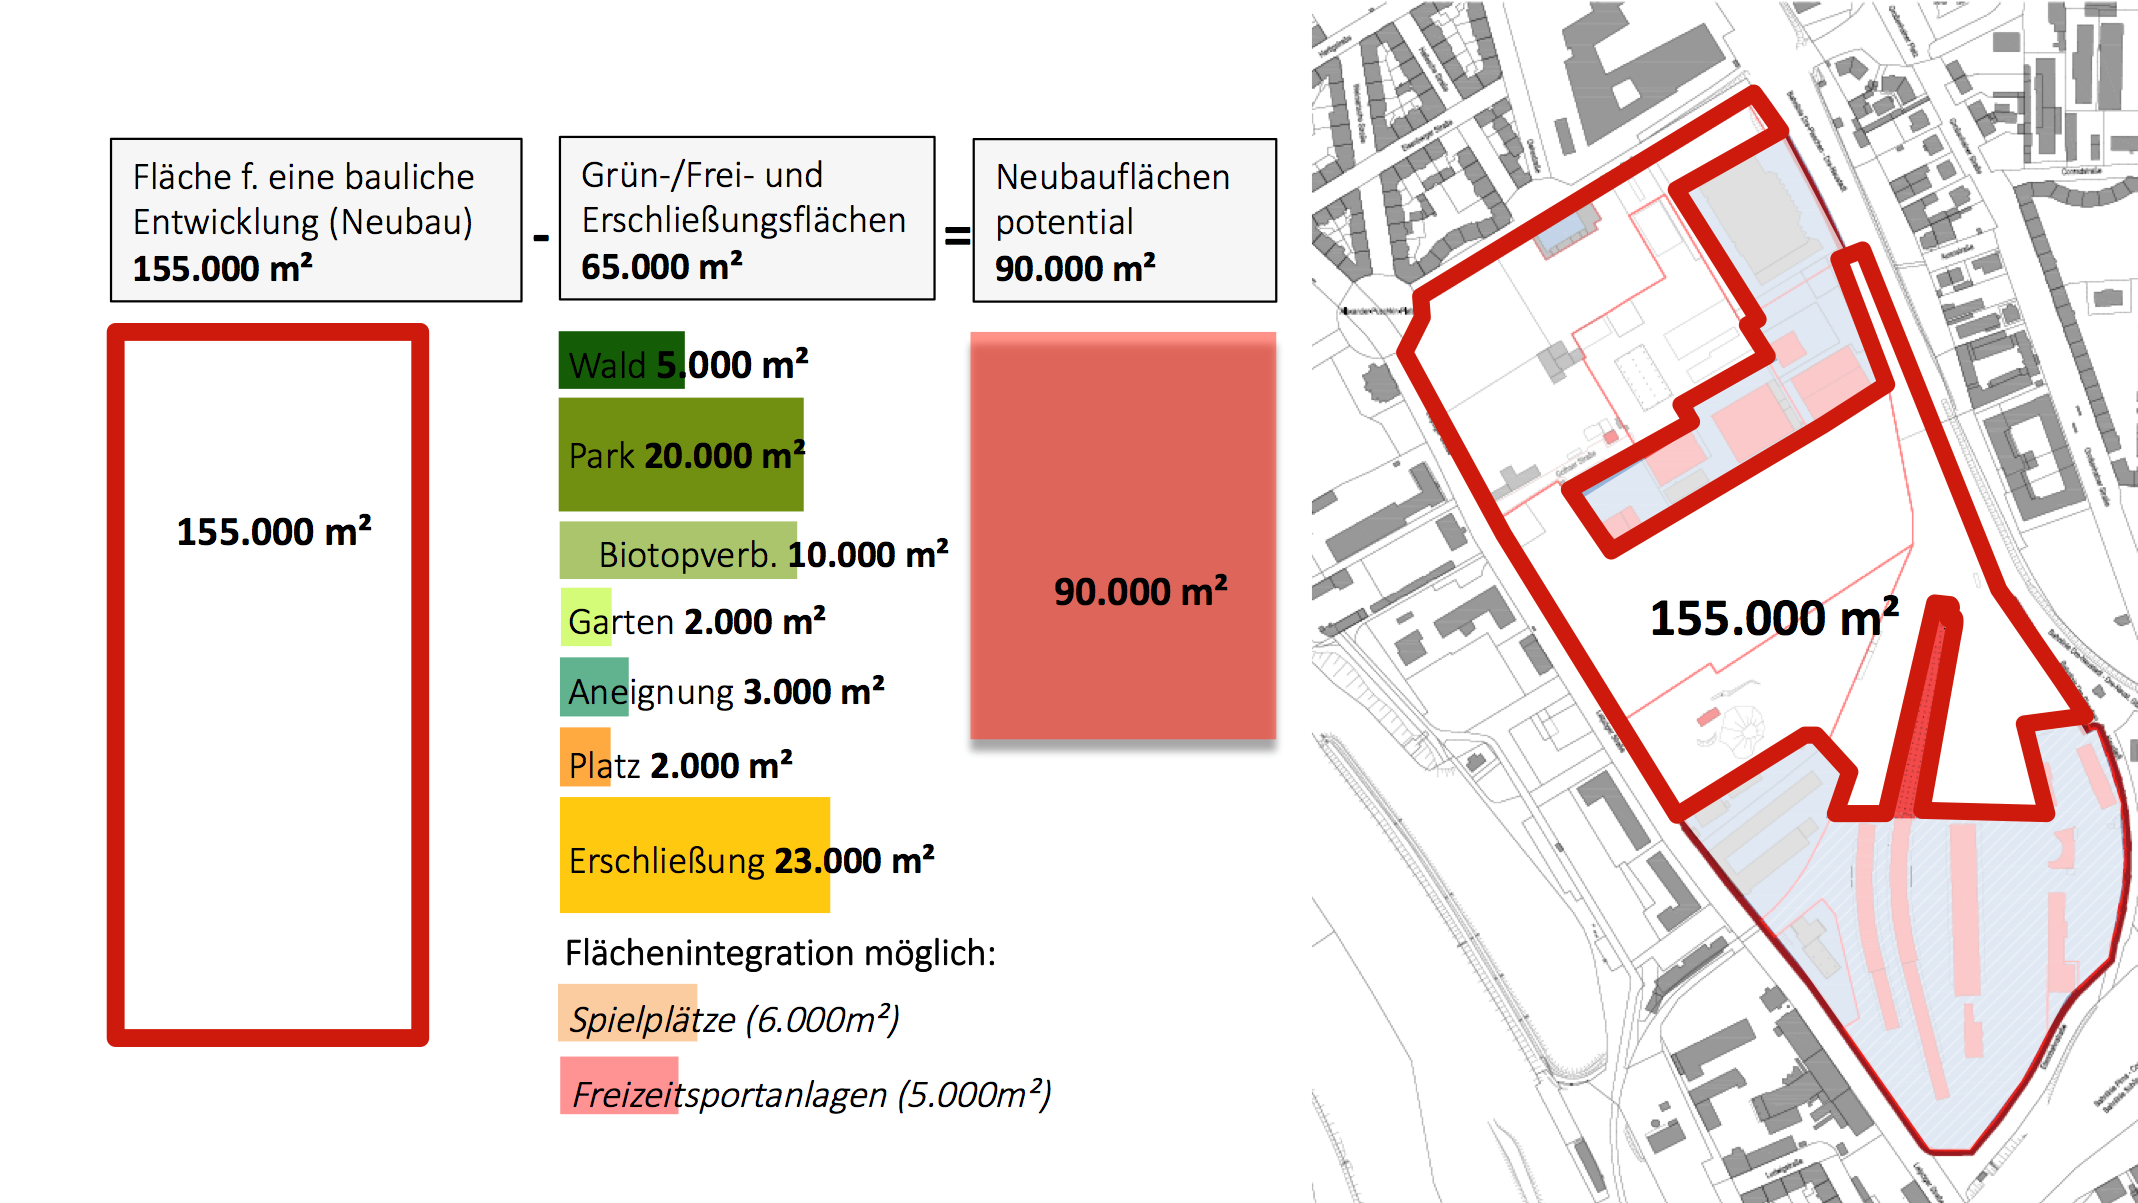 Die Abbildung zeigt eine Karte und Aufstellung der Gesamtfläche des Alten Leipziger Bahnhofs für eine bauliche Entwicklung (155.000 Quadratmeter) abzüglich der Grün-/Frei- und Erschließungsflächen (65.000 Quadratmeter) mit dem Ergebnis einer Fläche von 90.000 Quadratmeter potentieller Neubaufläche.